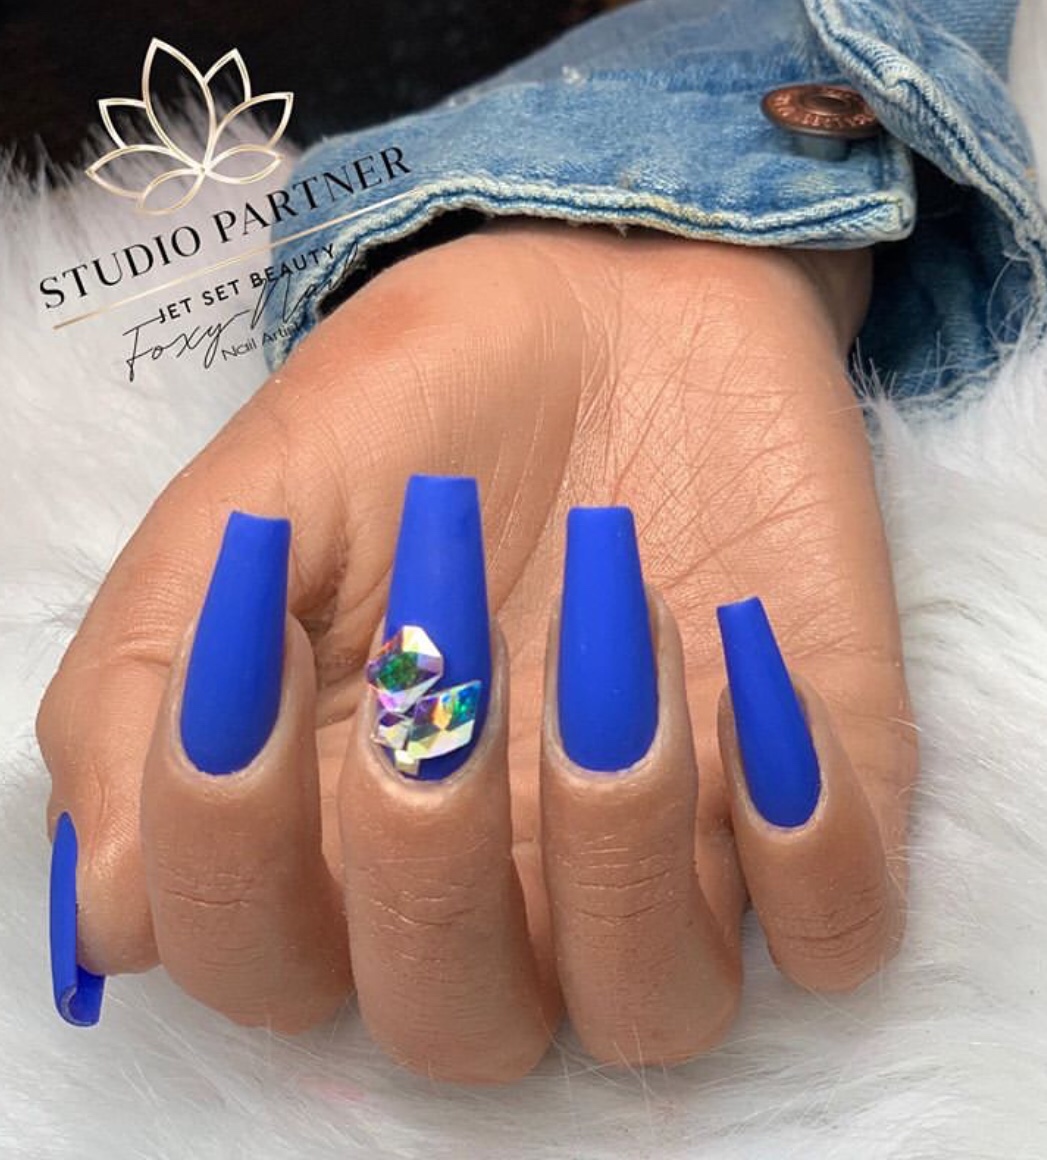 blue nail designs